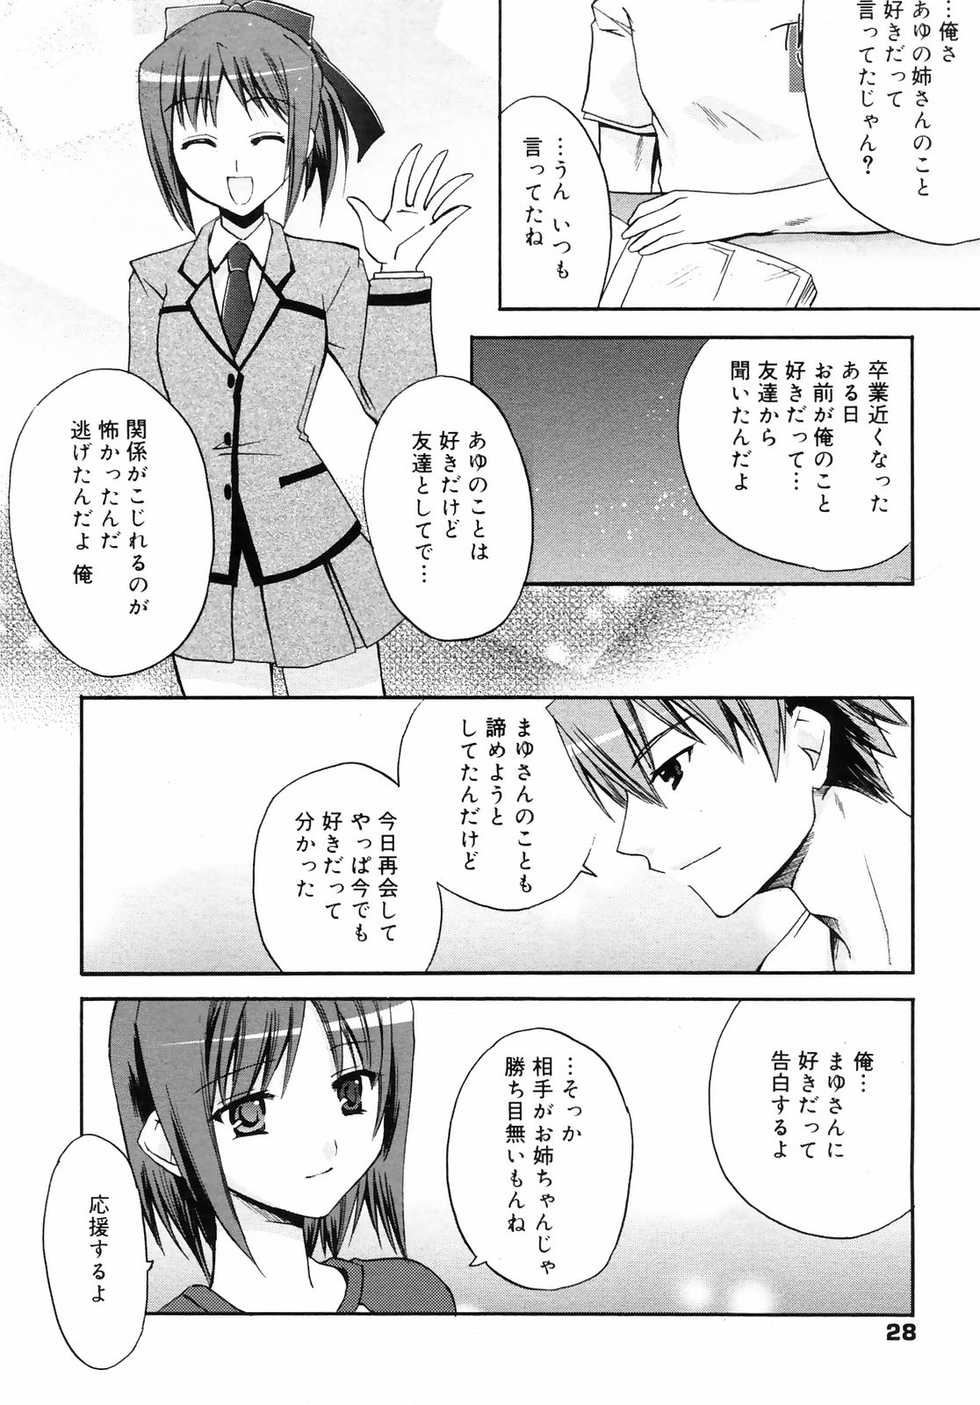 Manga Bangaichi 2008-10 - Page 28